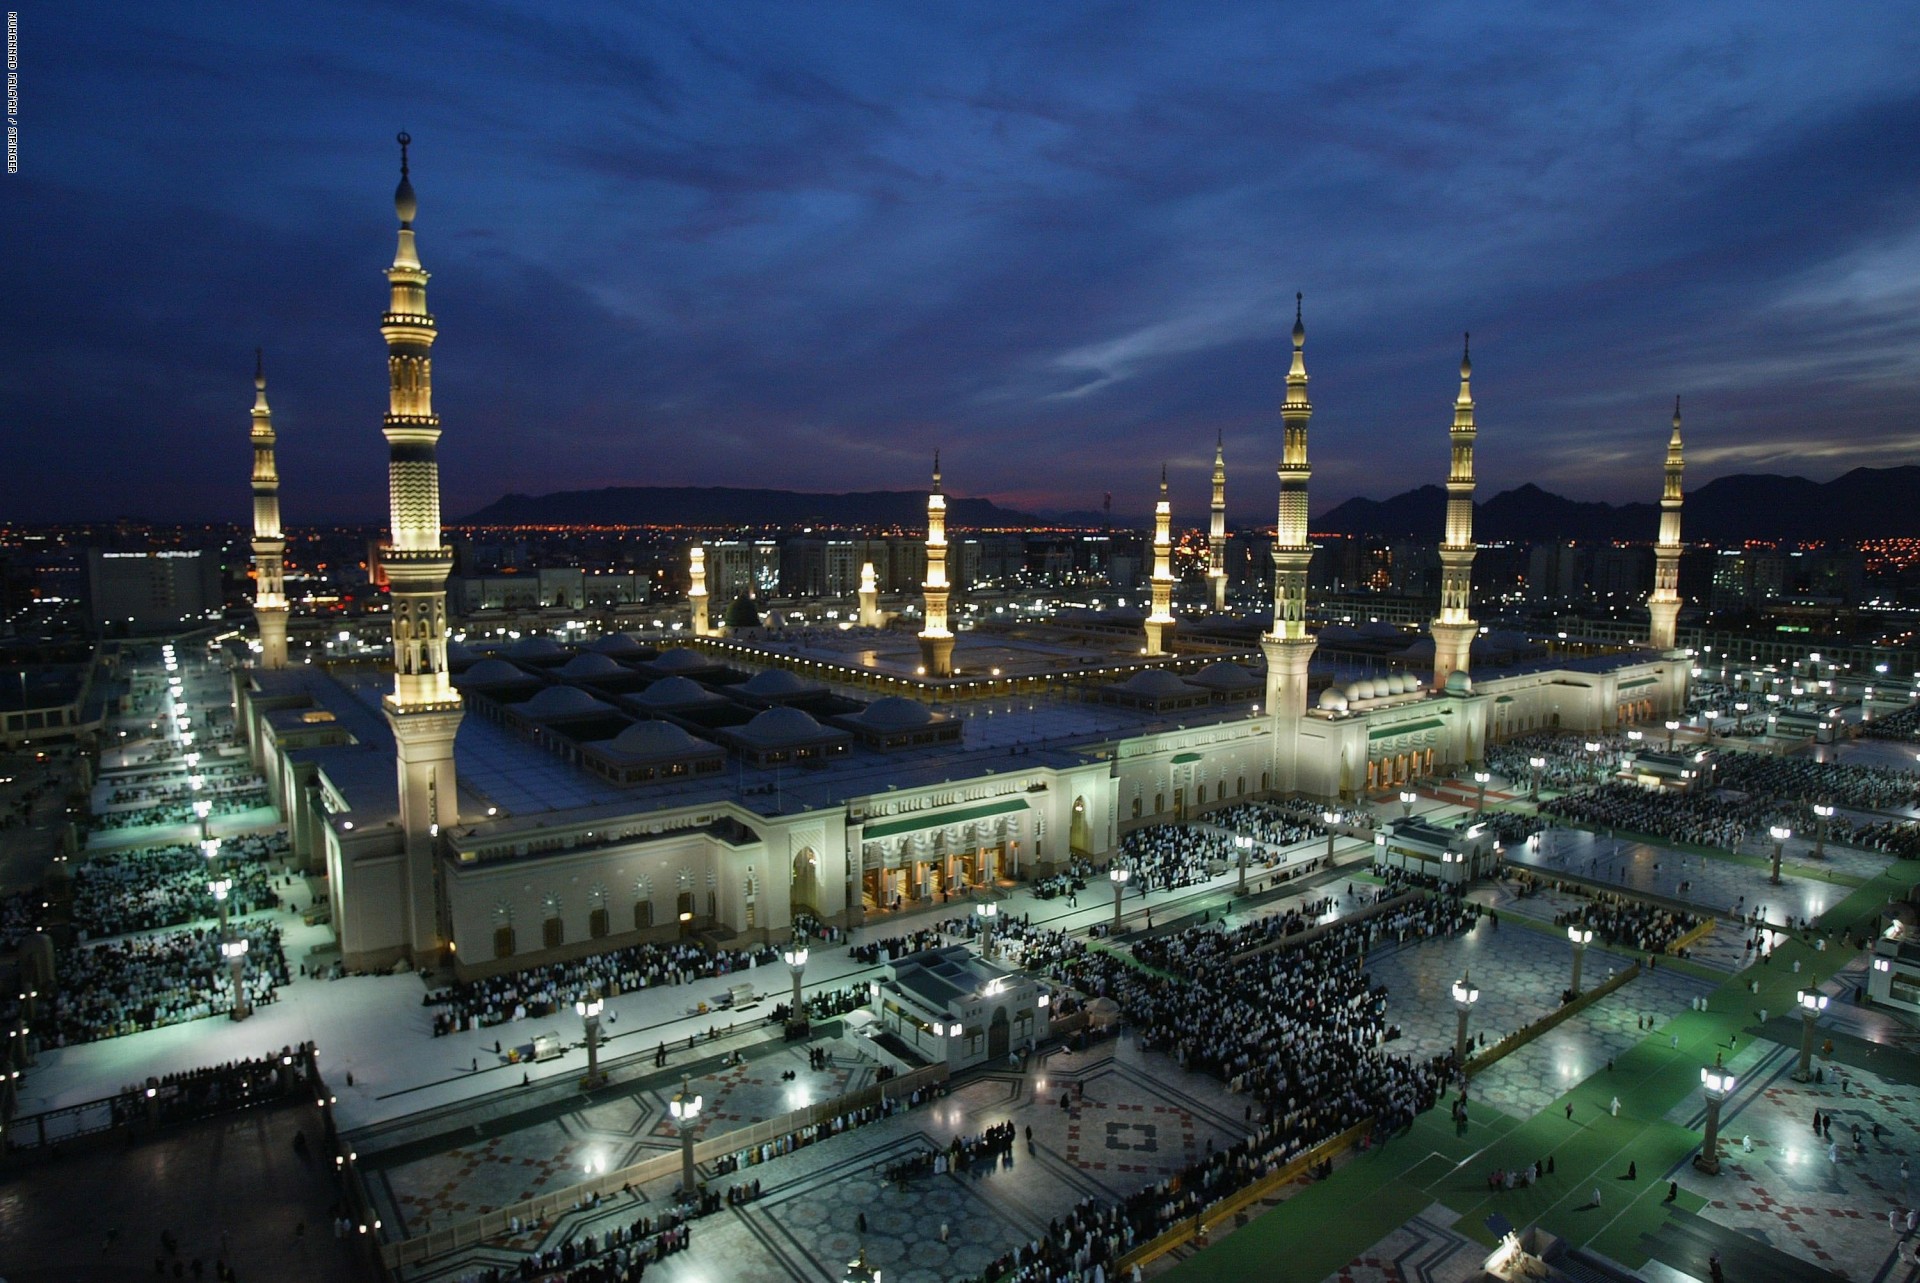 عاجل| السعودية تعلن إعادة تعليق الصلاة بالمساجد وتشديد الإجراءات الإحترازية 15 يوم بهذه المناطق